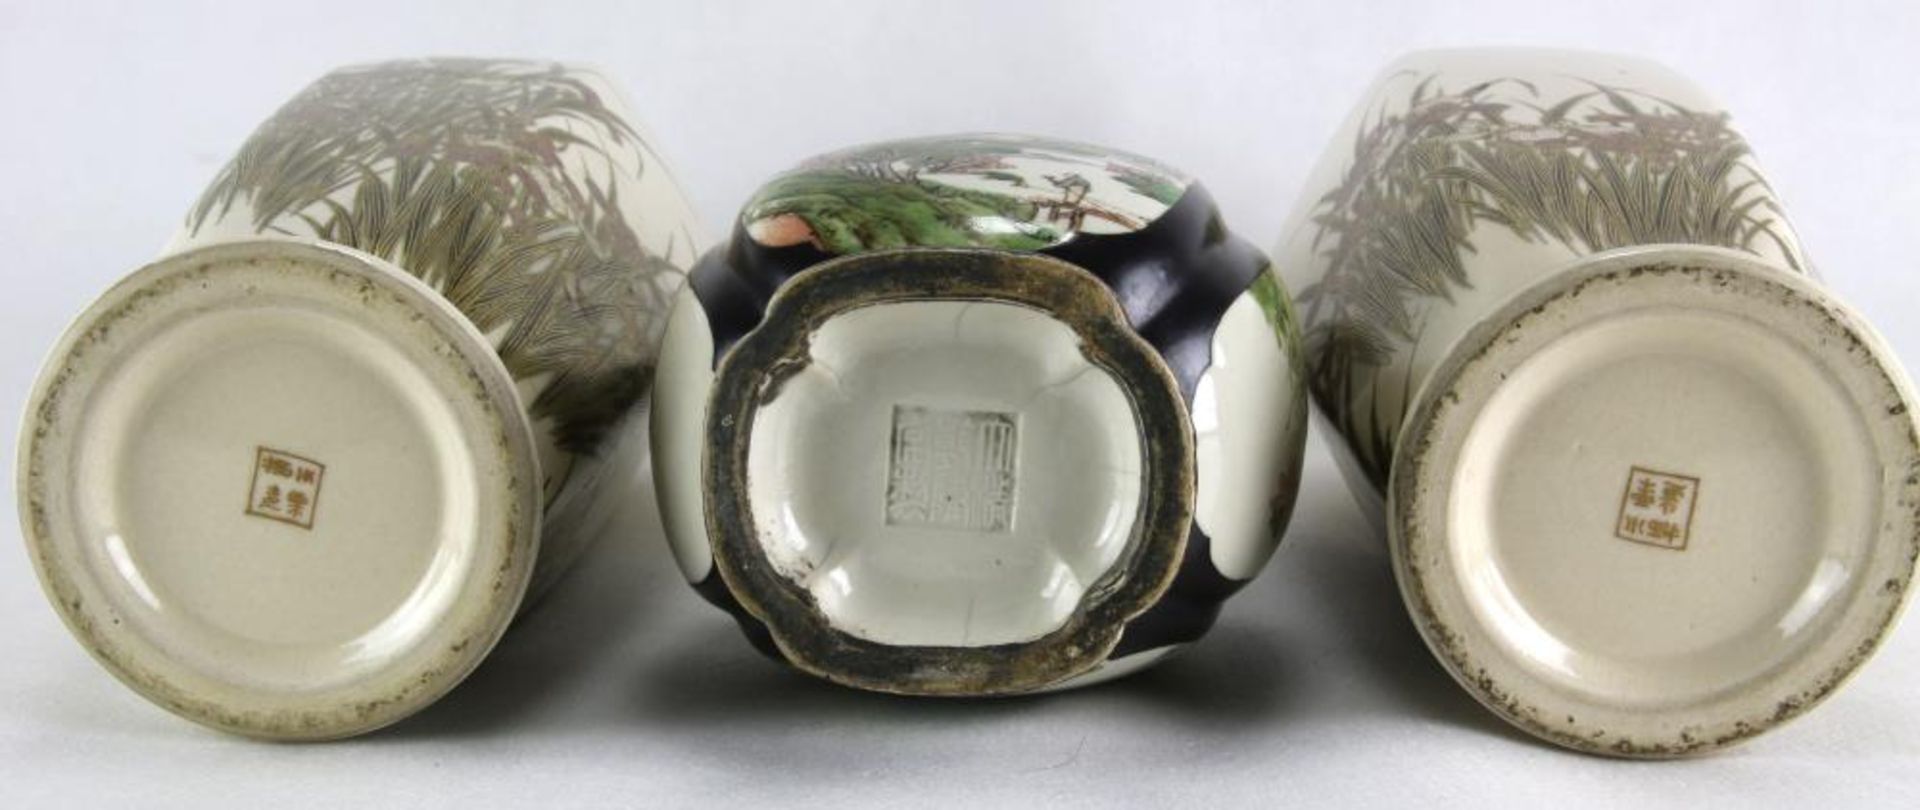 Drei Vasen. China, Kaiserzeit um 1900. Ein Paar und eine einzelne. Keramik mit reliefiertem - Bild 3 aus 3